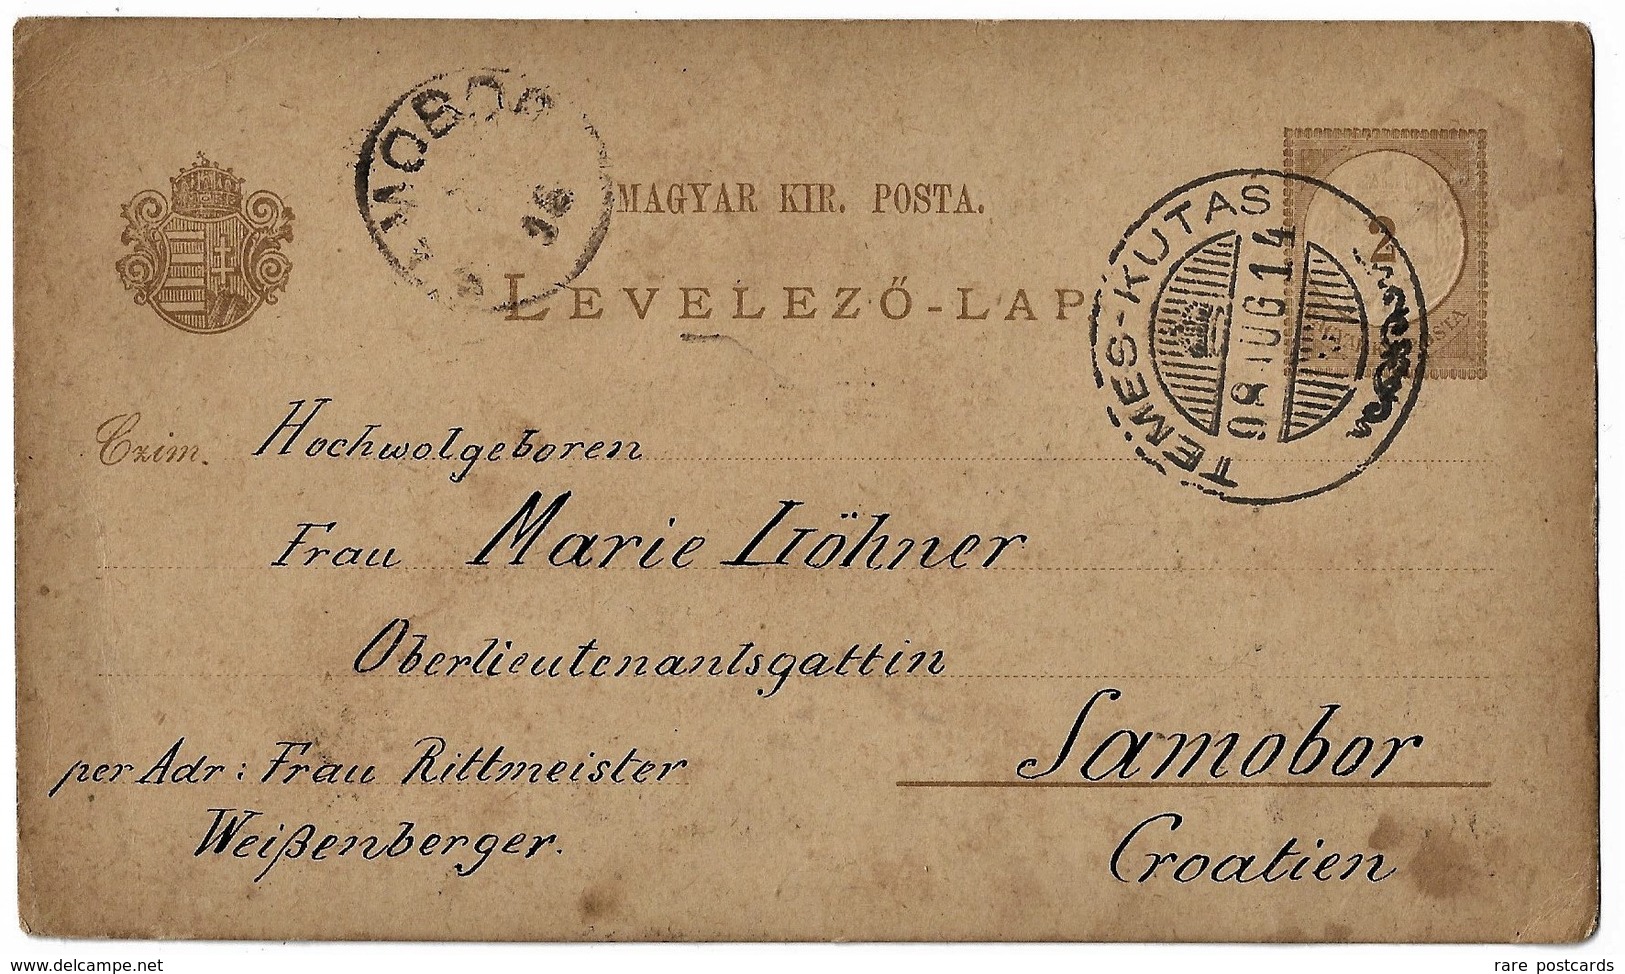 Markovac 1908. Circulated - Temes Kutas - Serbia - Hand Designed - Mega Rare - Signature Of Author - Art Postcard - Serbia